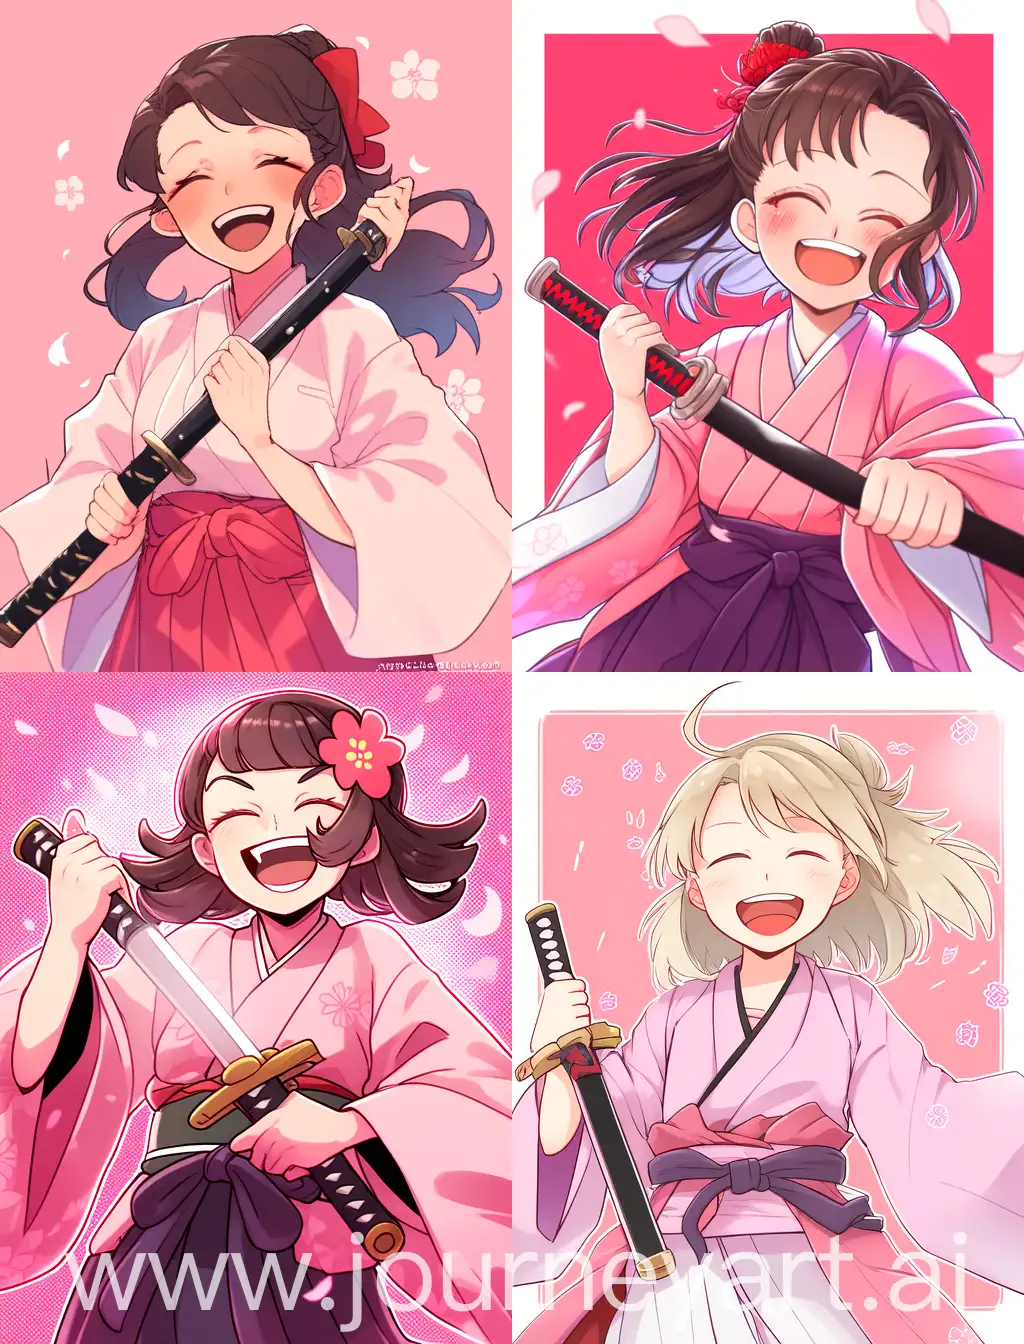 Joyful-Girl-in-Kimono-with-Katana-on-Pink-Background